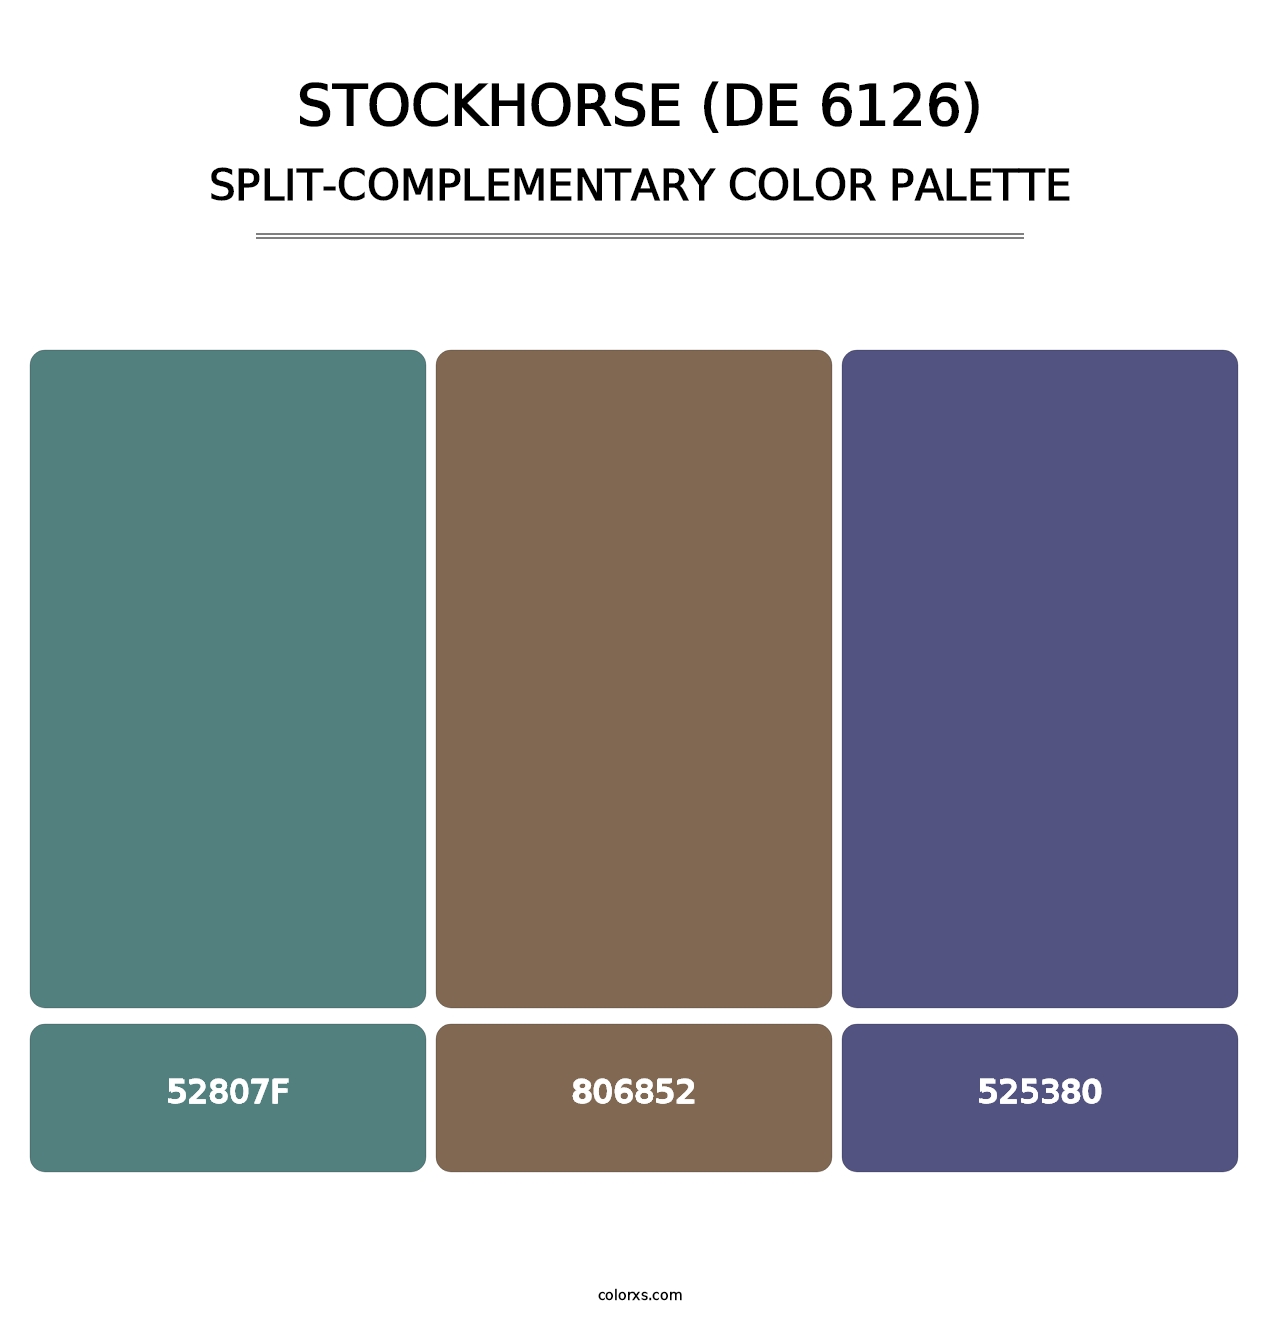 Stockhorse (DE 6126) - Split-Complementary Color Palette